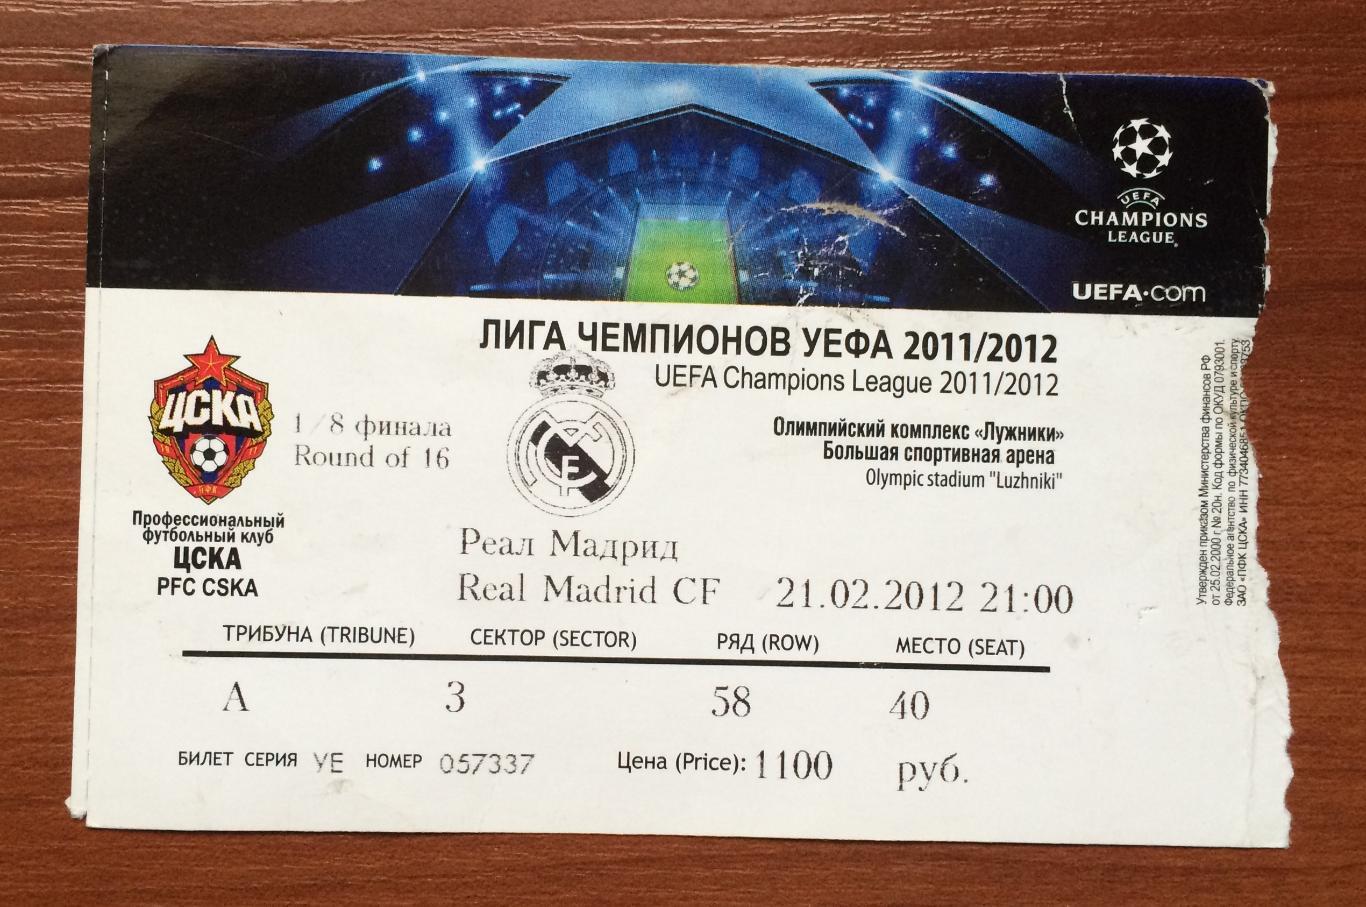 Билет ЦСКА Москва - Реал Мадрид Испания 21.02.2012 год